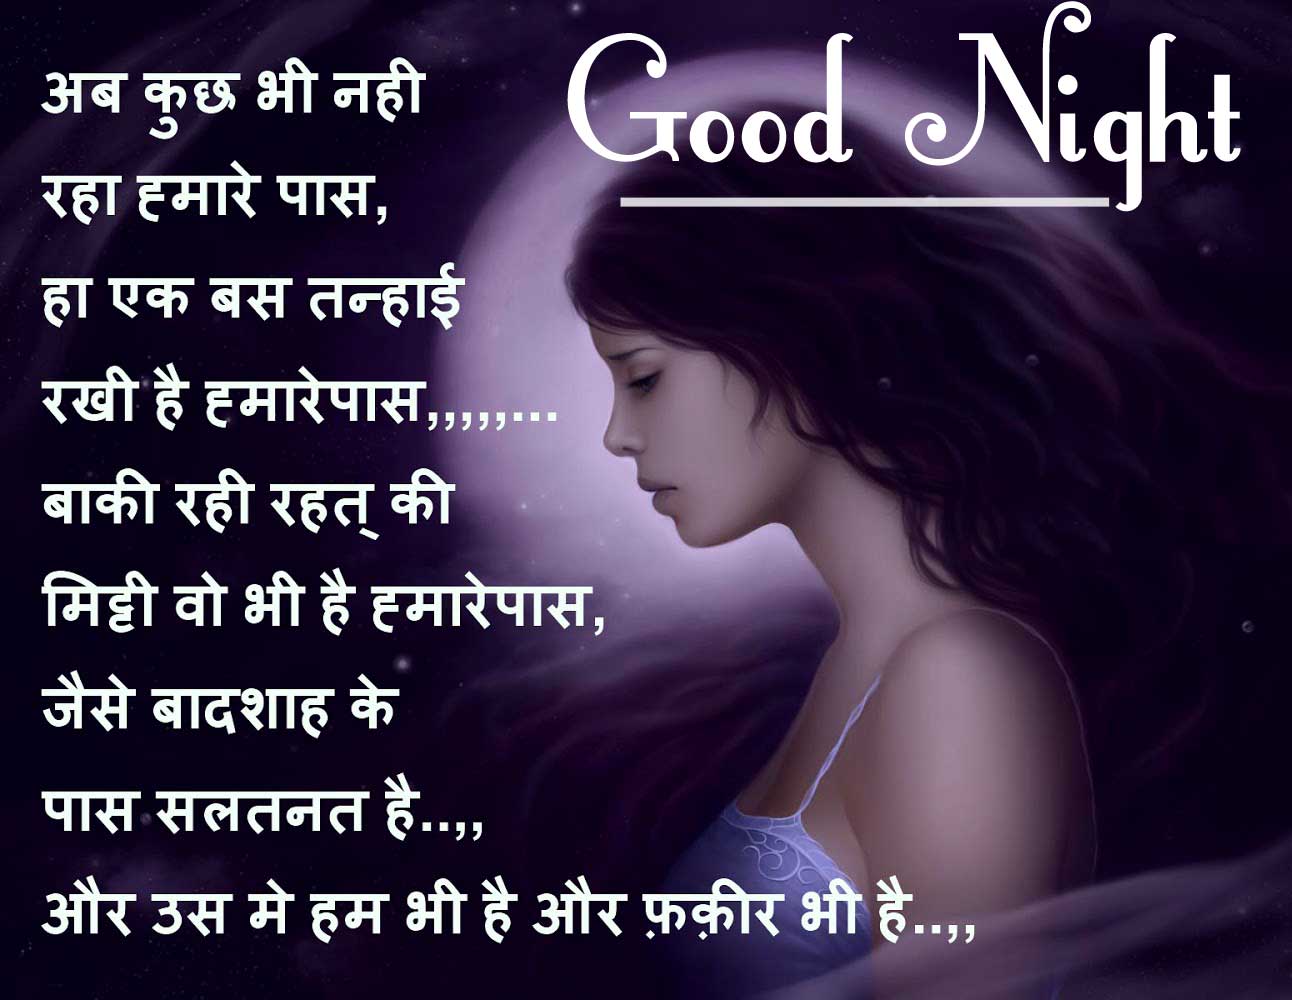 New Best Good Night Images With Hindi Shayari Pics Download 